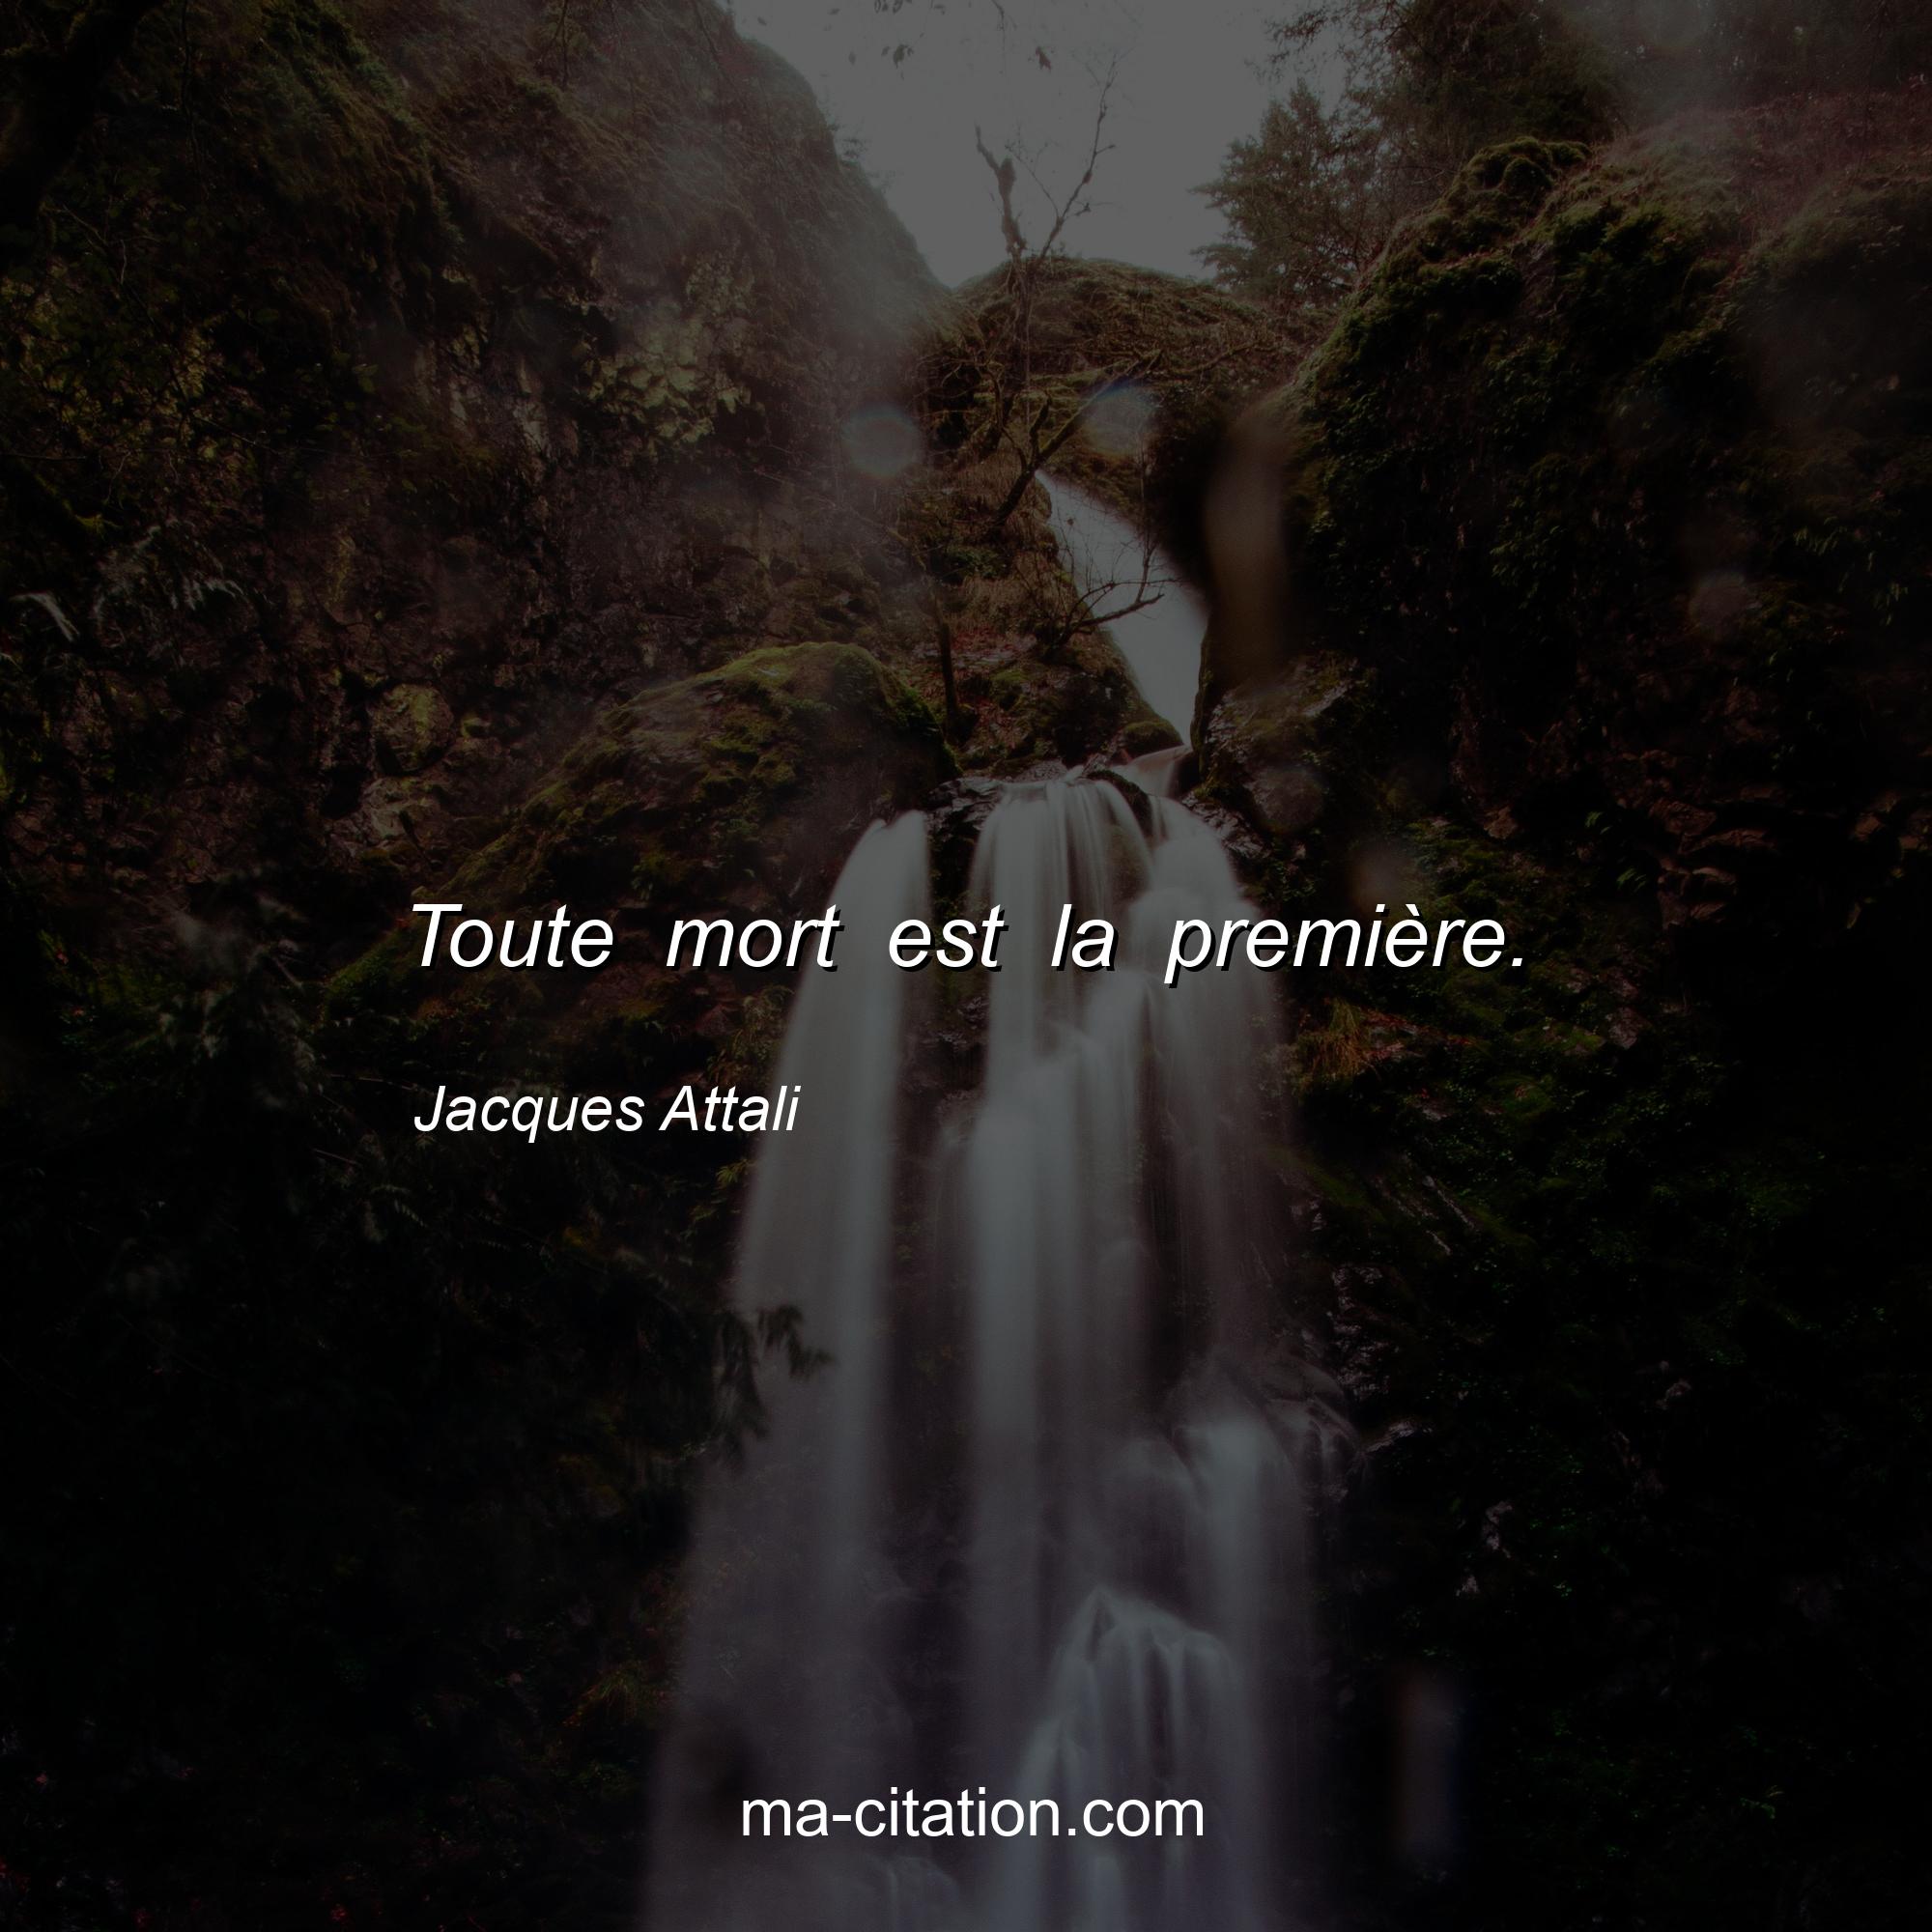 Jacques Attali : Toute mort est la première.